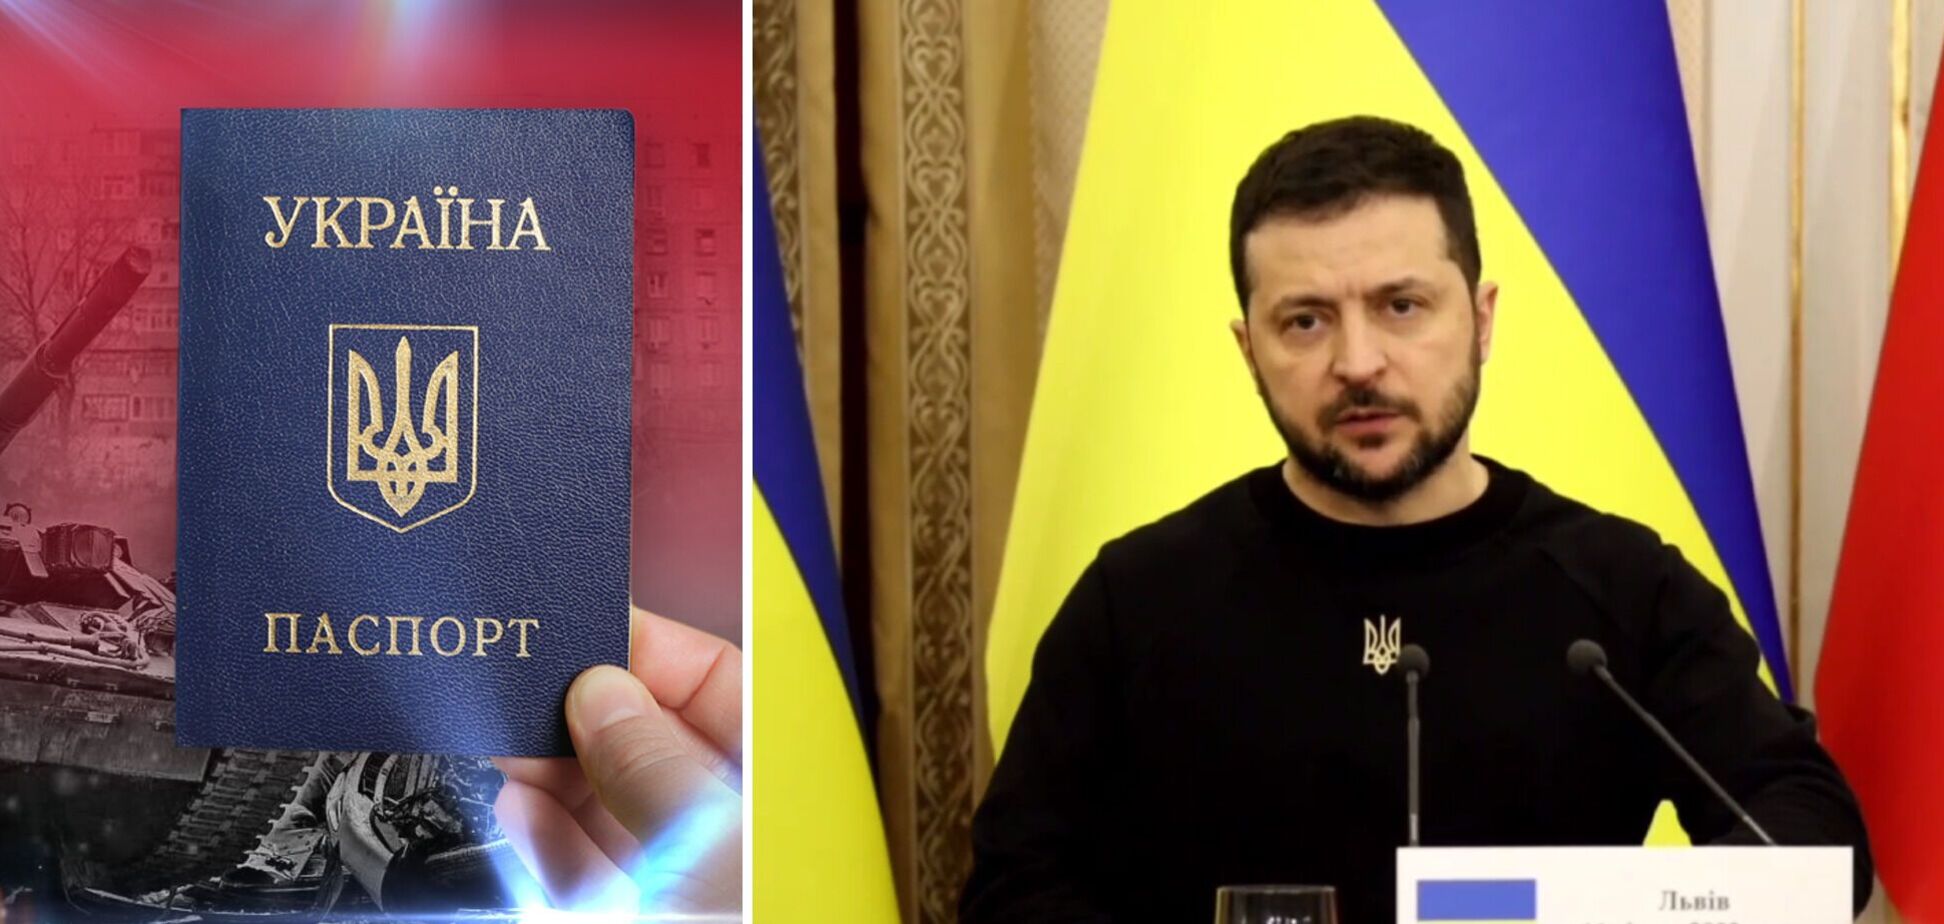 Гражданство Украины должно быть единственным: Зеленский прокомментировал решение о Медведчуке и других нардепах. Видео